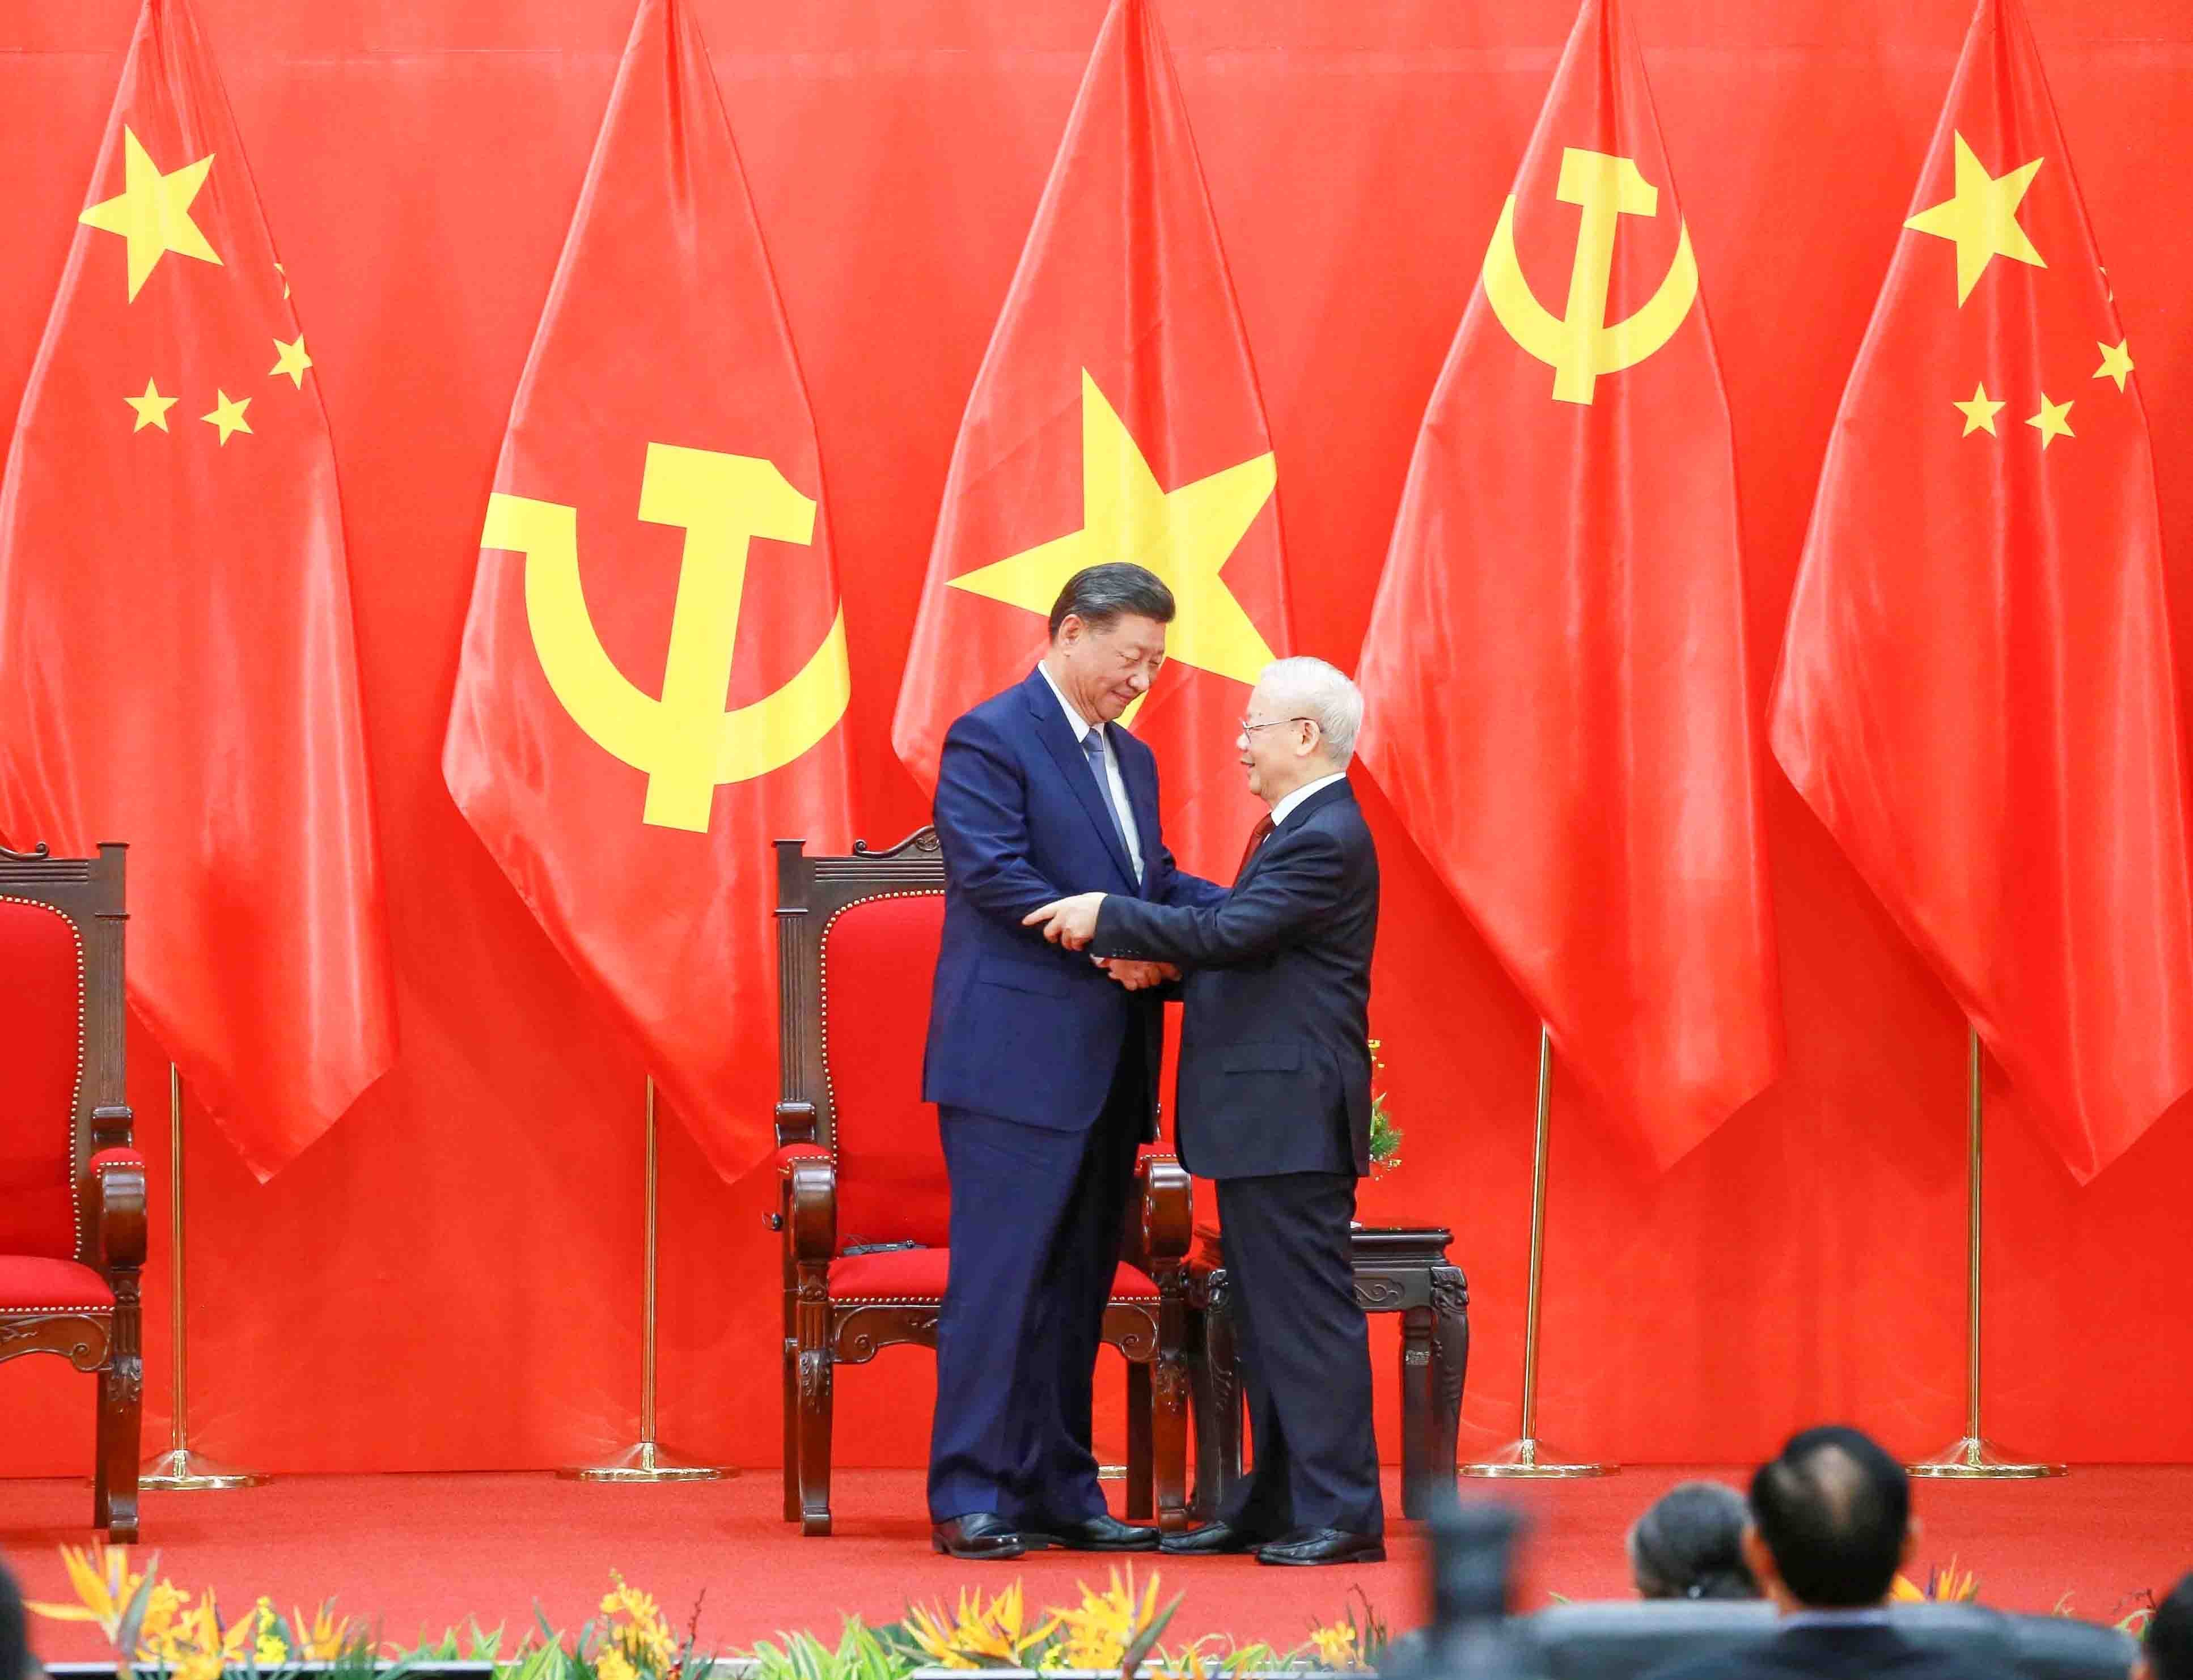 President Xi Jinping's Vietnam visit vital beyond bilateral ties: Op-Ed